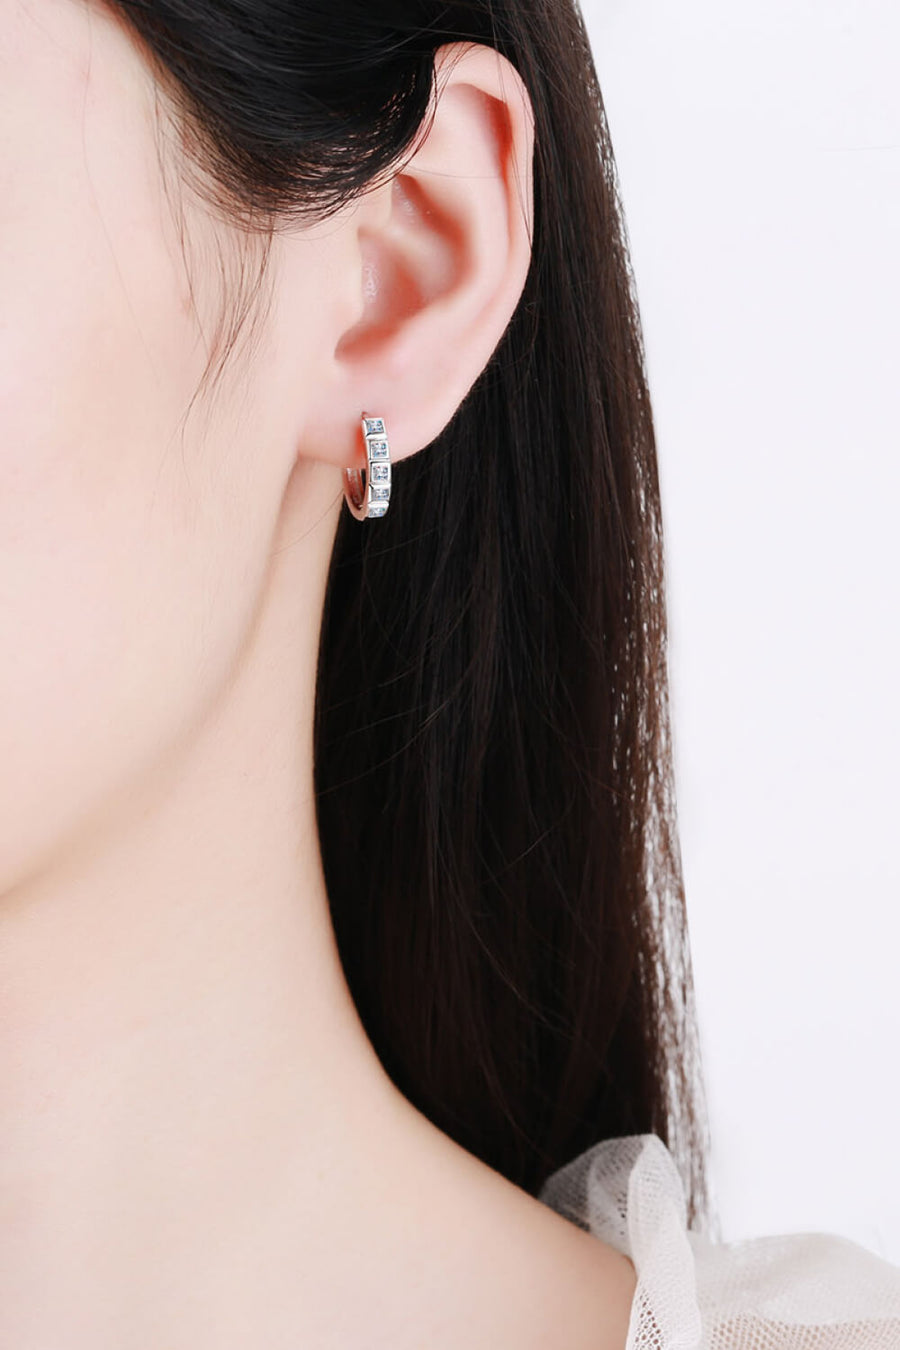 Best Diamond Earrings Jewelry Gifts for Women | 0.8 Carat Diamond Huggie Earrings - Always Chic  | MASON New York